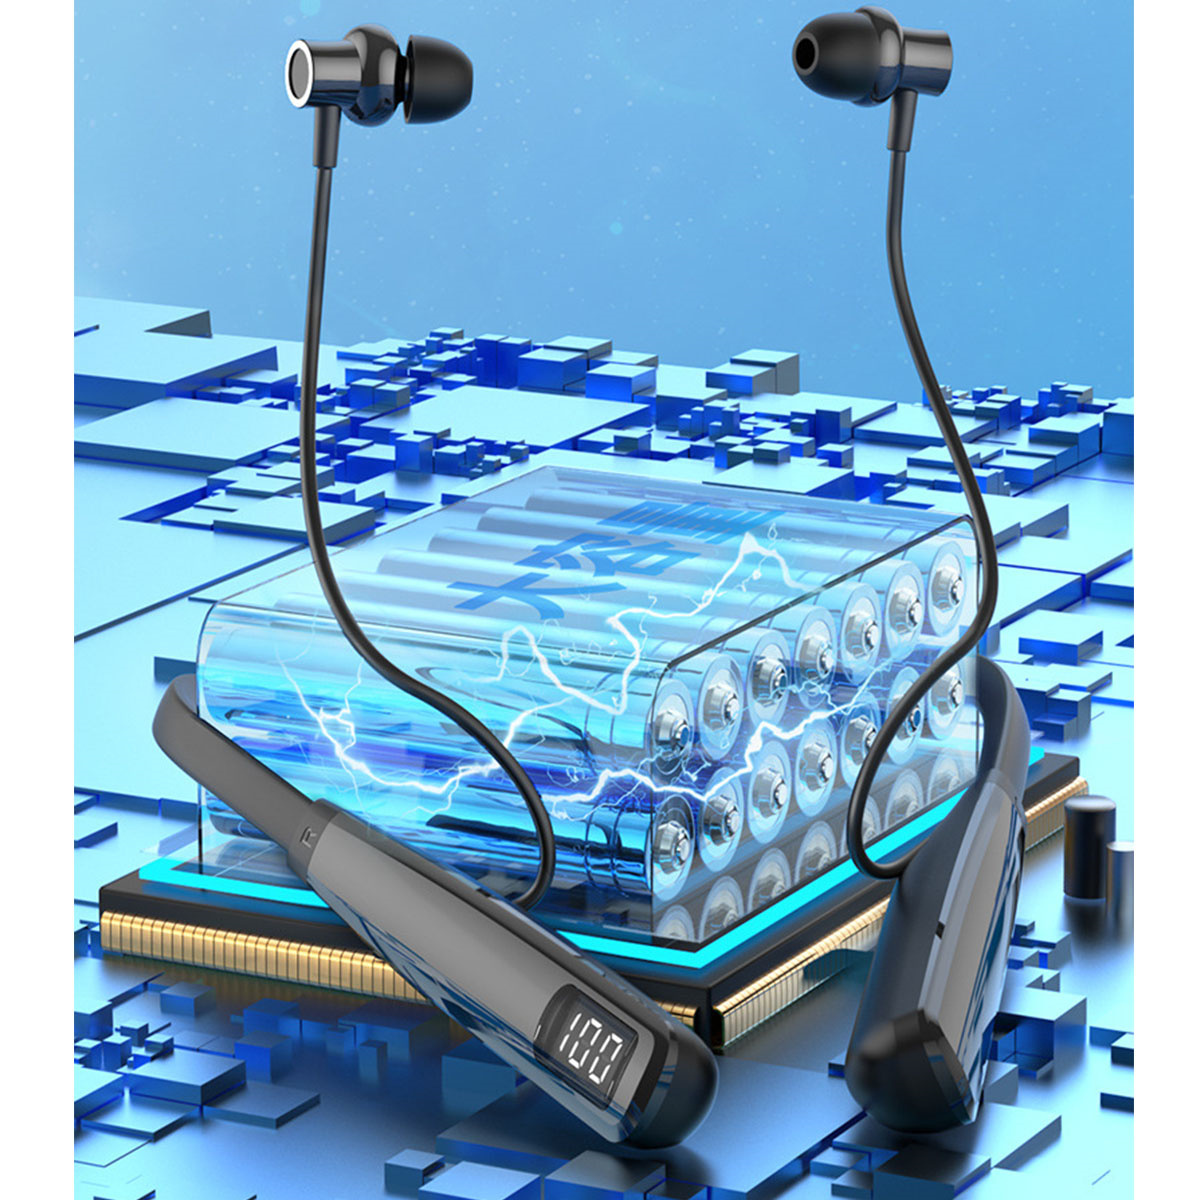 ENBAOXIN Bluetooth-Headset - um Standby, Tragen Kopfhörer Hals, Bluetooth Schwarz In-ear langer langes ohne den Schmerzen, Bluetooth